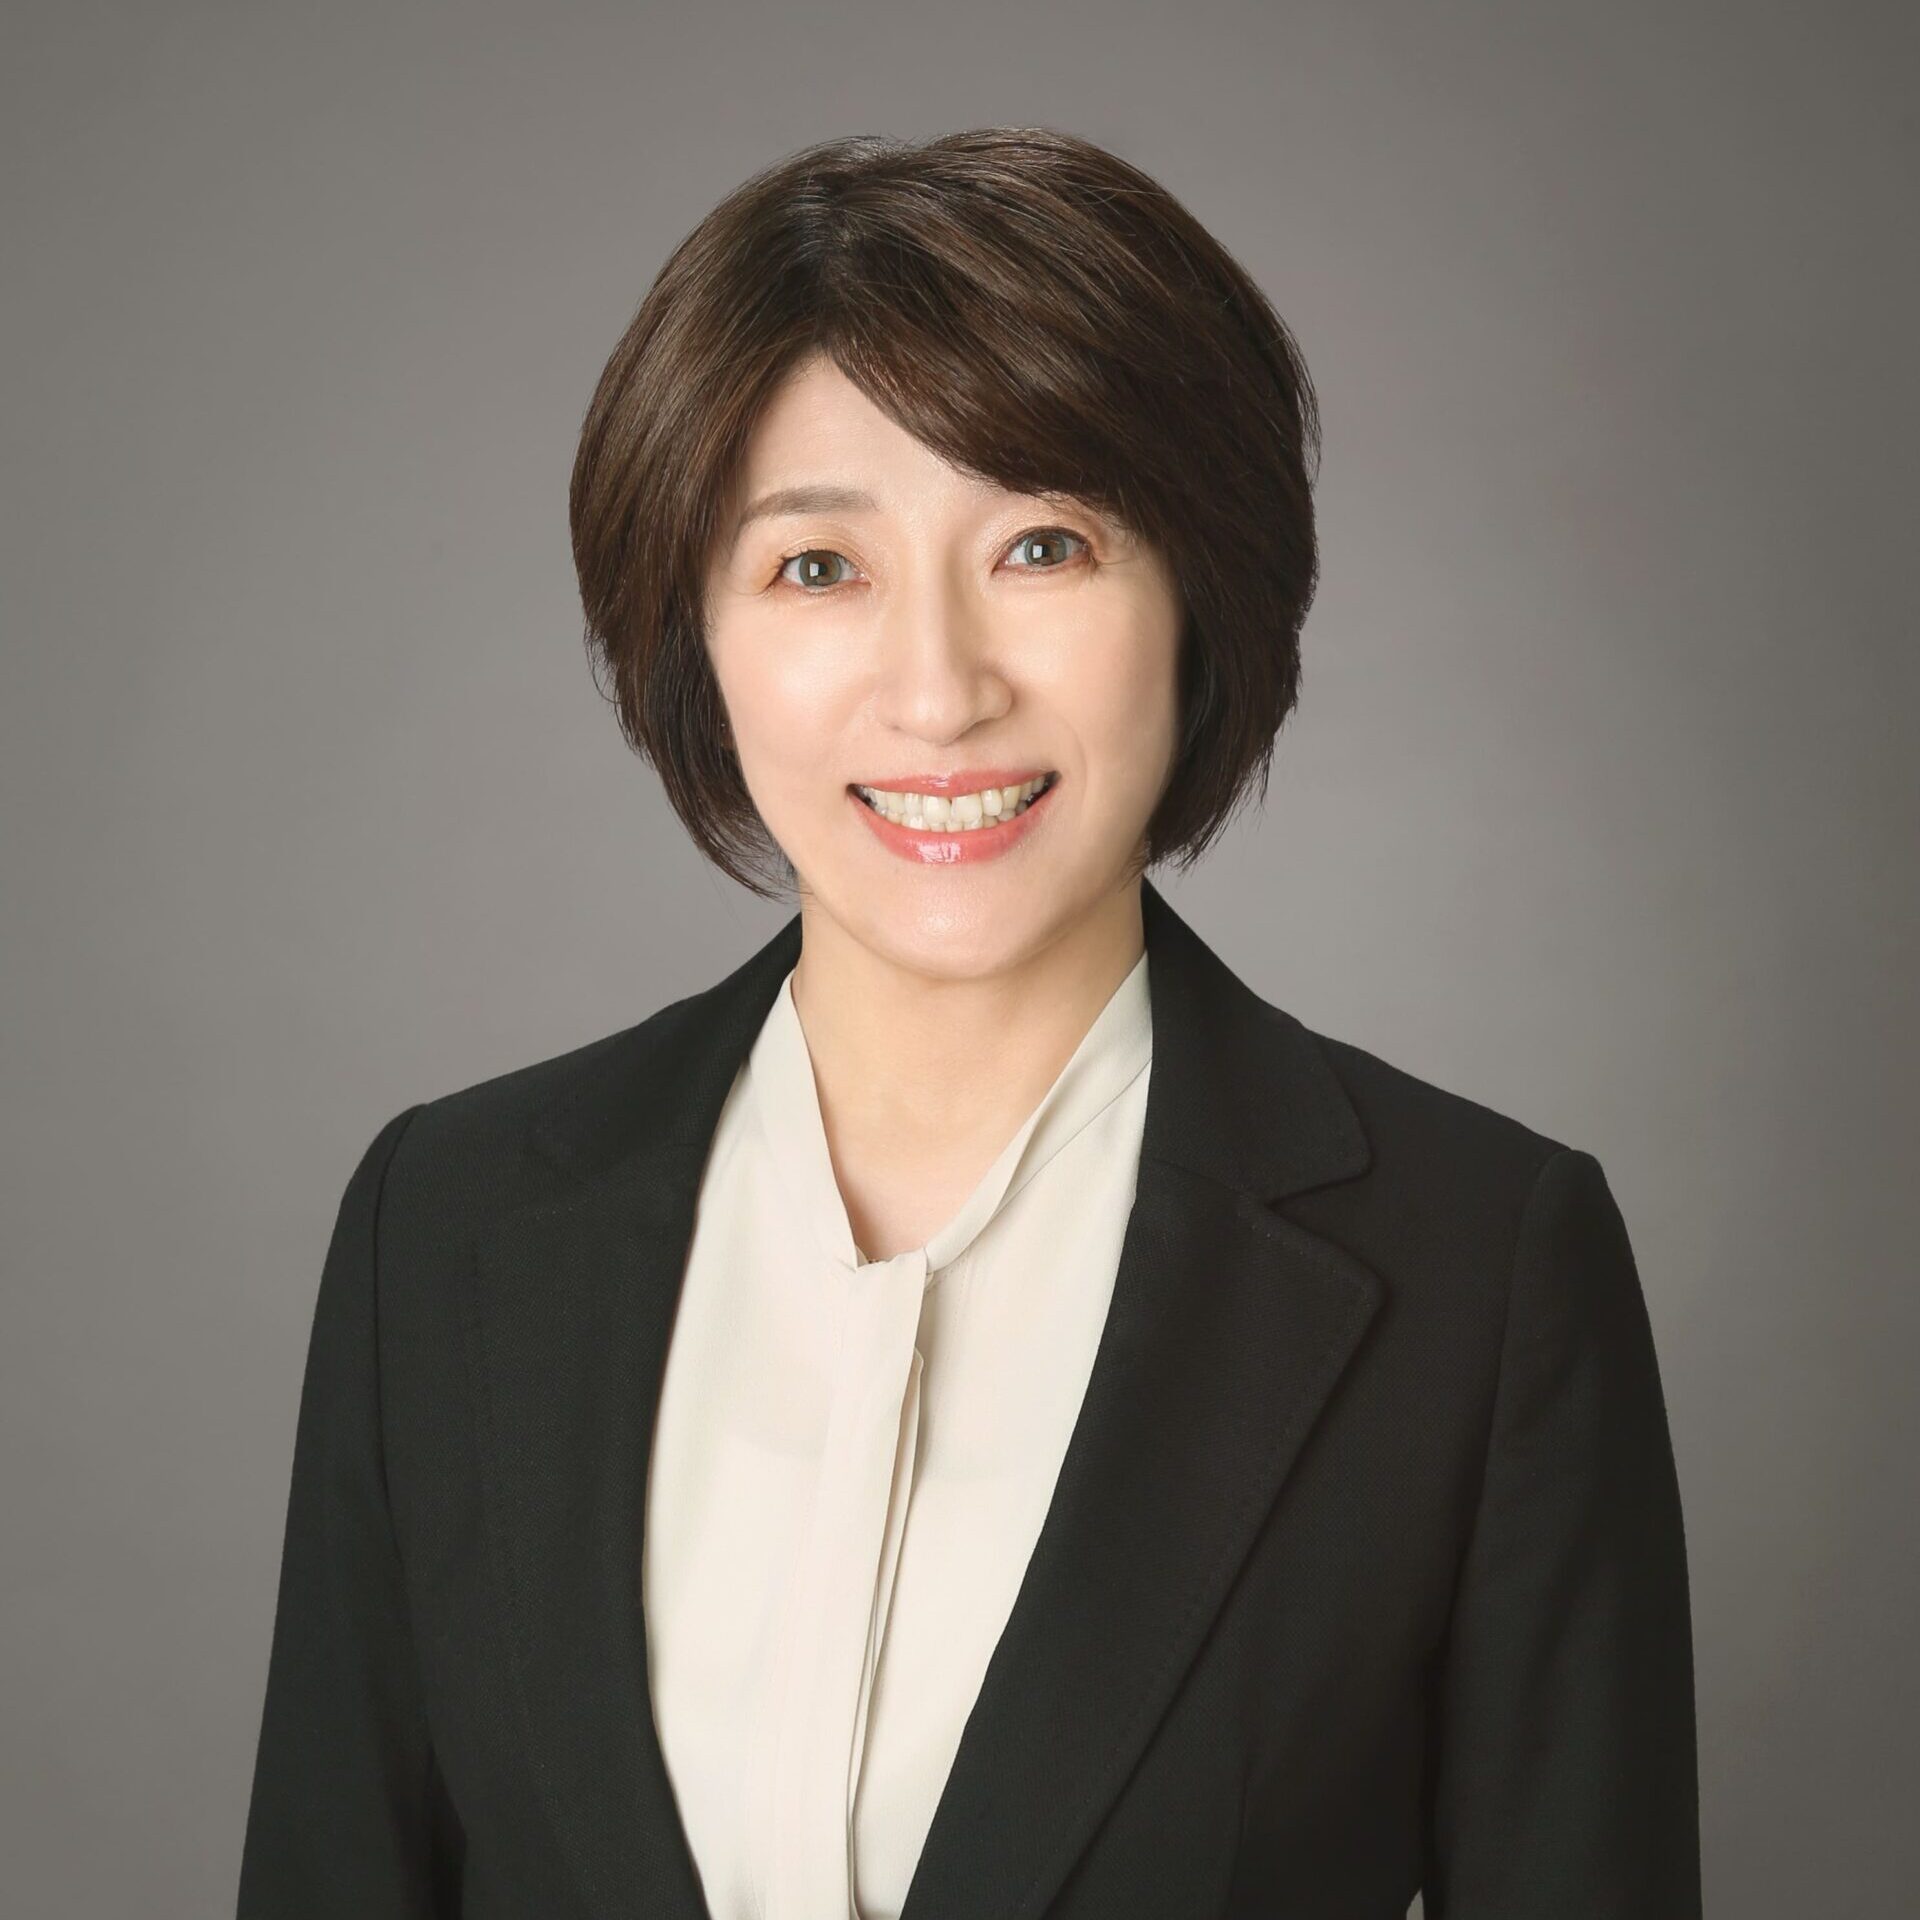 Yuko Yamashita